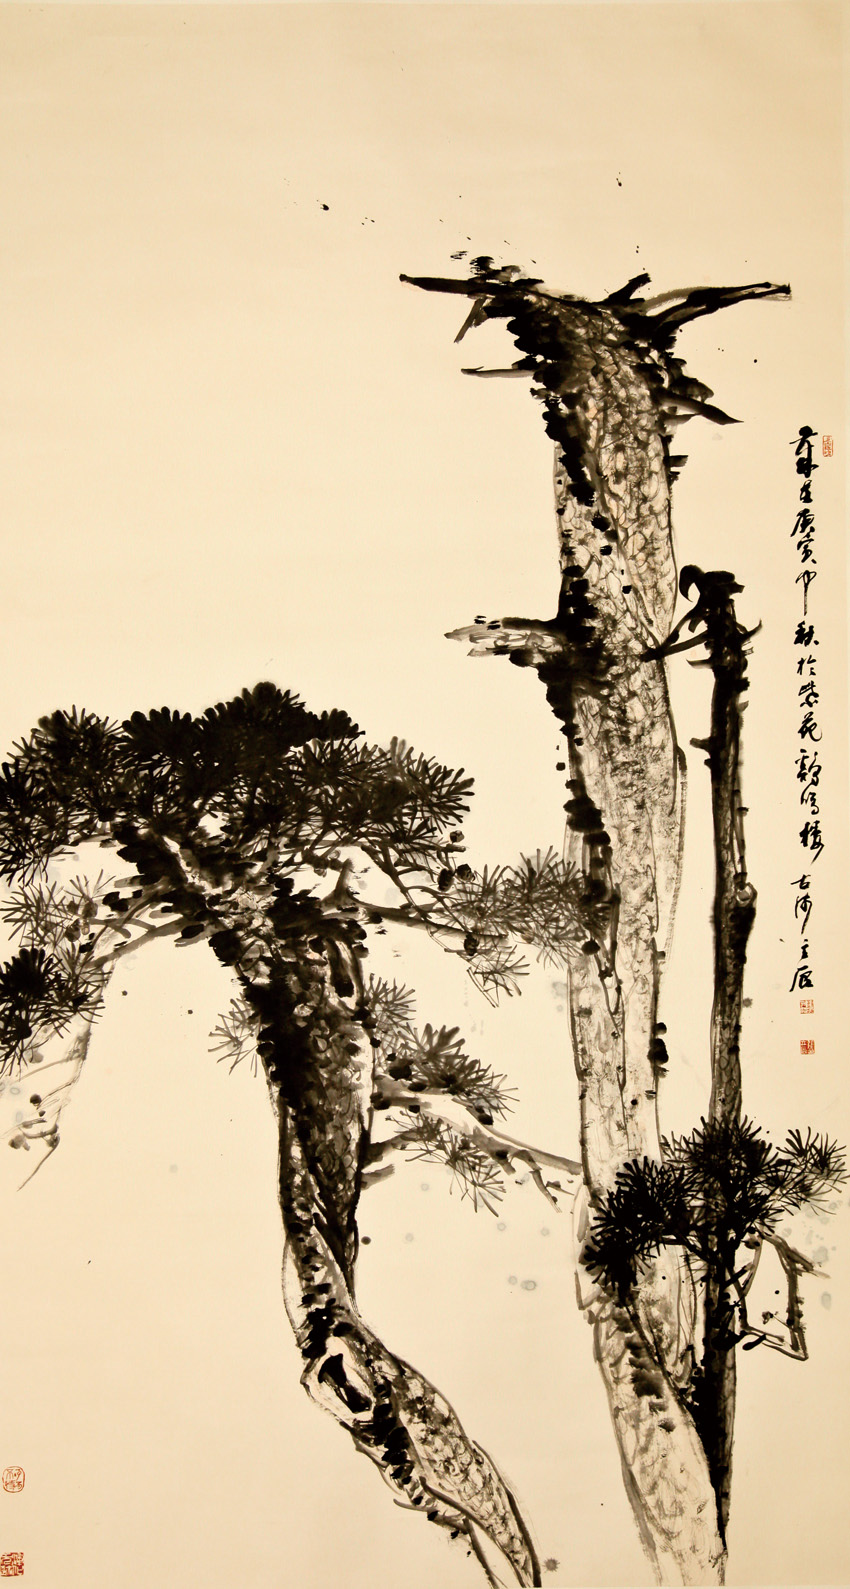 张立辰:写意精神是中国绘画有别于西方艺术科学精神的重要标志